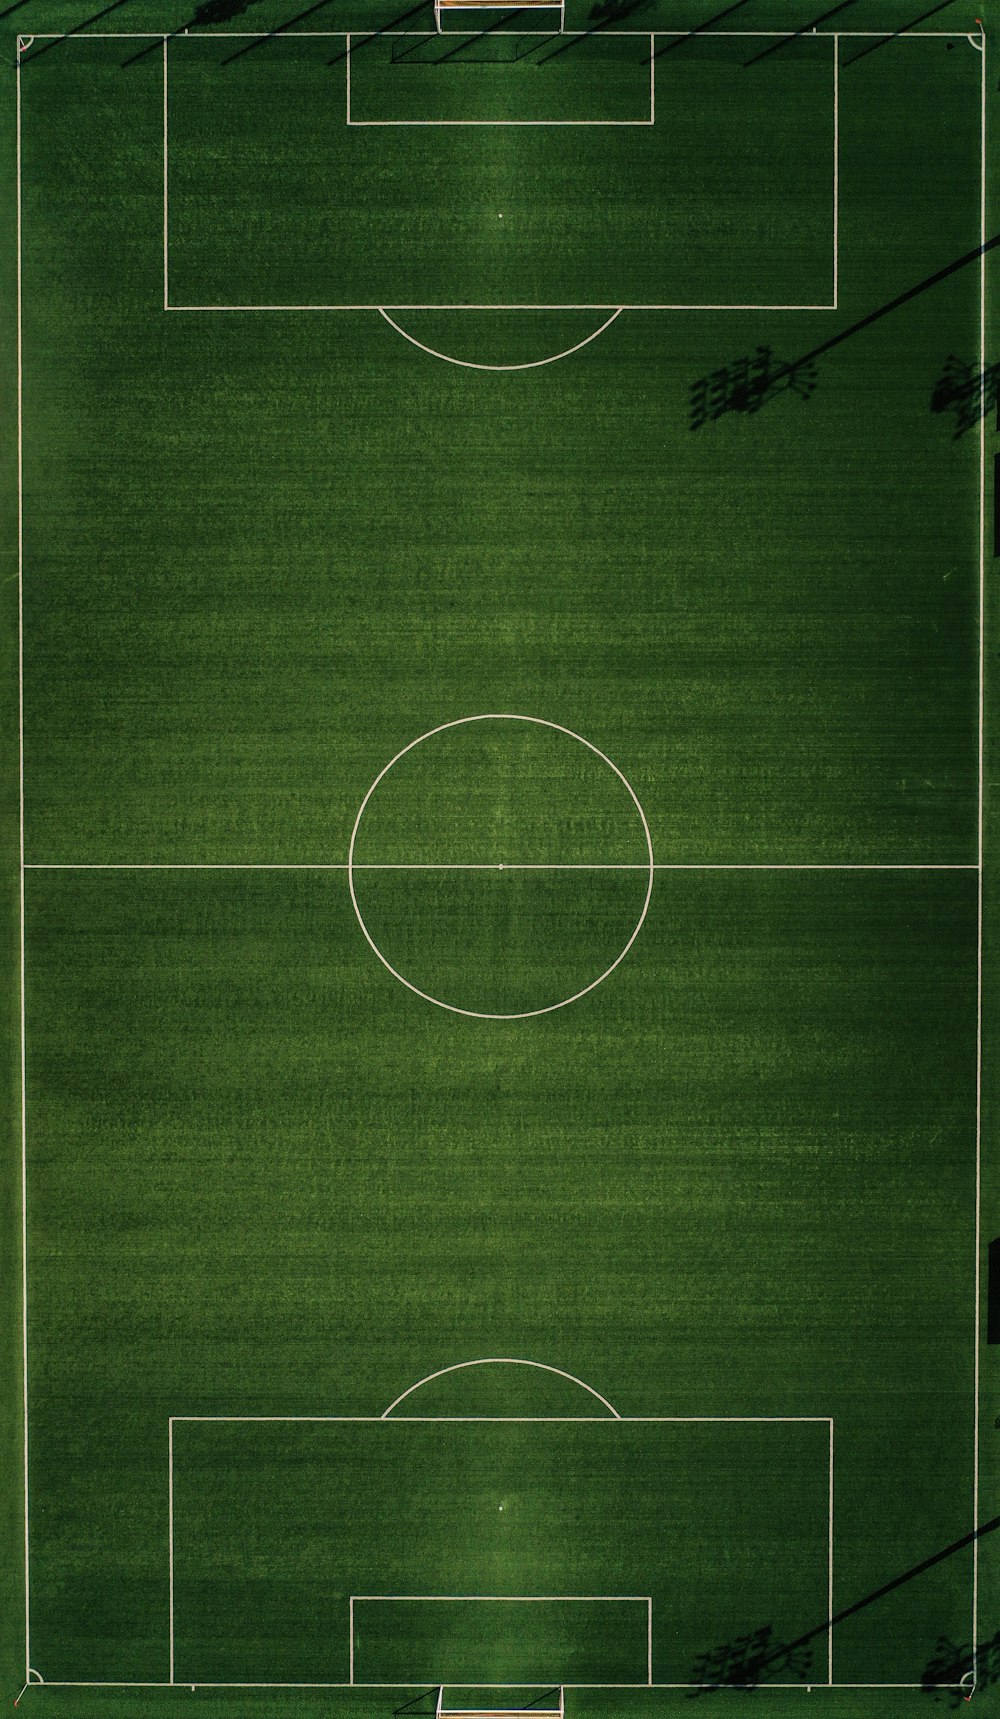 Football Wallpapers: Free HD Download [500+ HQ] | Unsplash